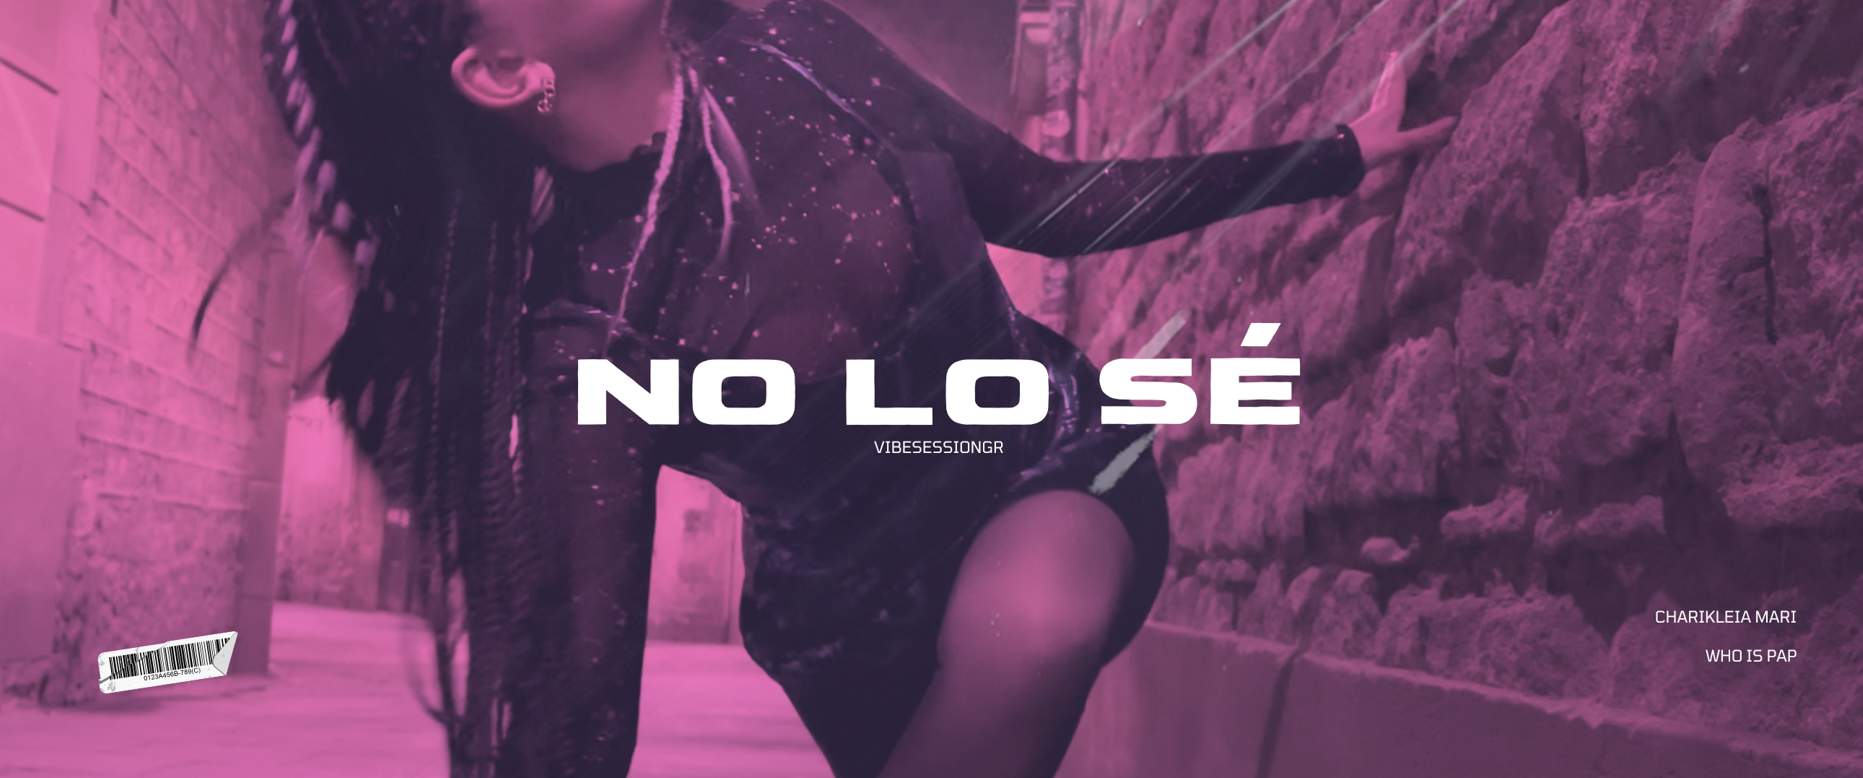 “ΝΟ LO SE” το νέο τραγούδι των Χαρίκλεια Μαρή &  Vibesessiongr που δίνει ένα δυνατό κοινωνικό μήνυμα περί των υγιών διαπροσωπικών σχέσεων, σπάζοντας την μεροληψία κατά των γυναικών.